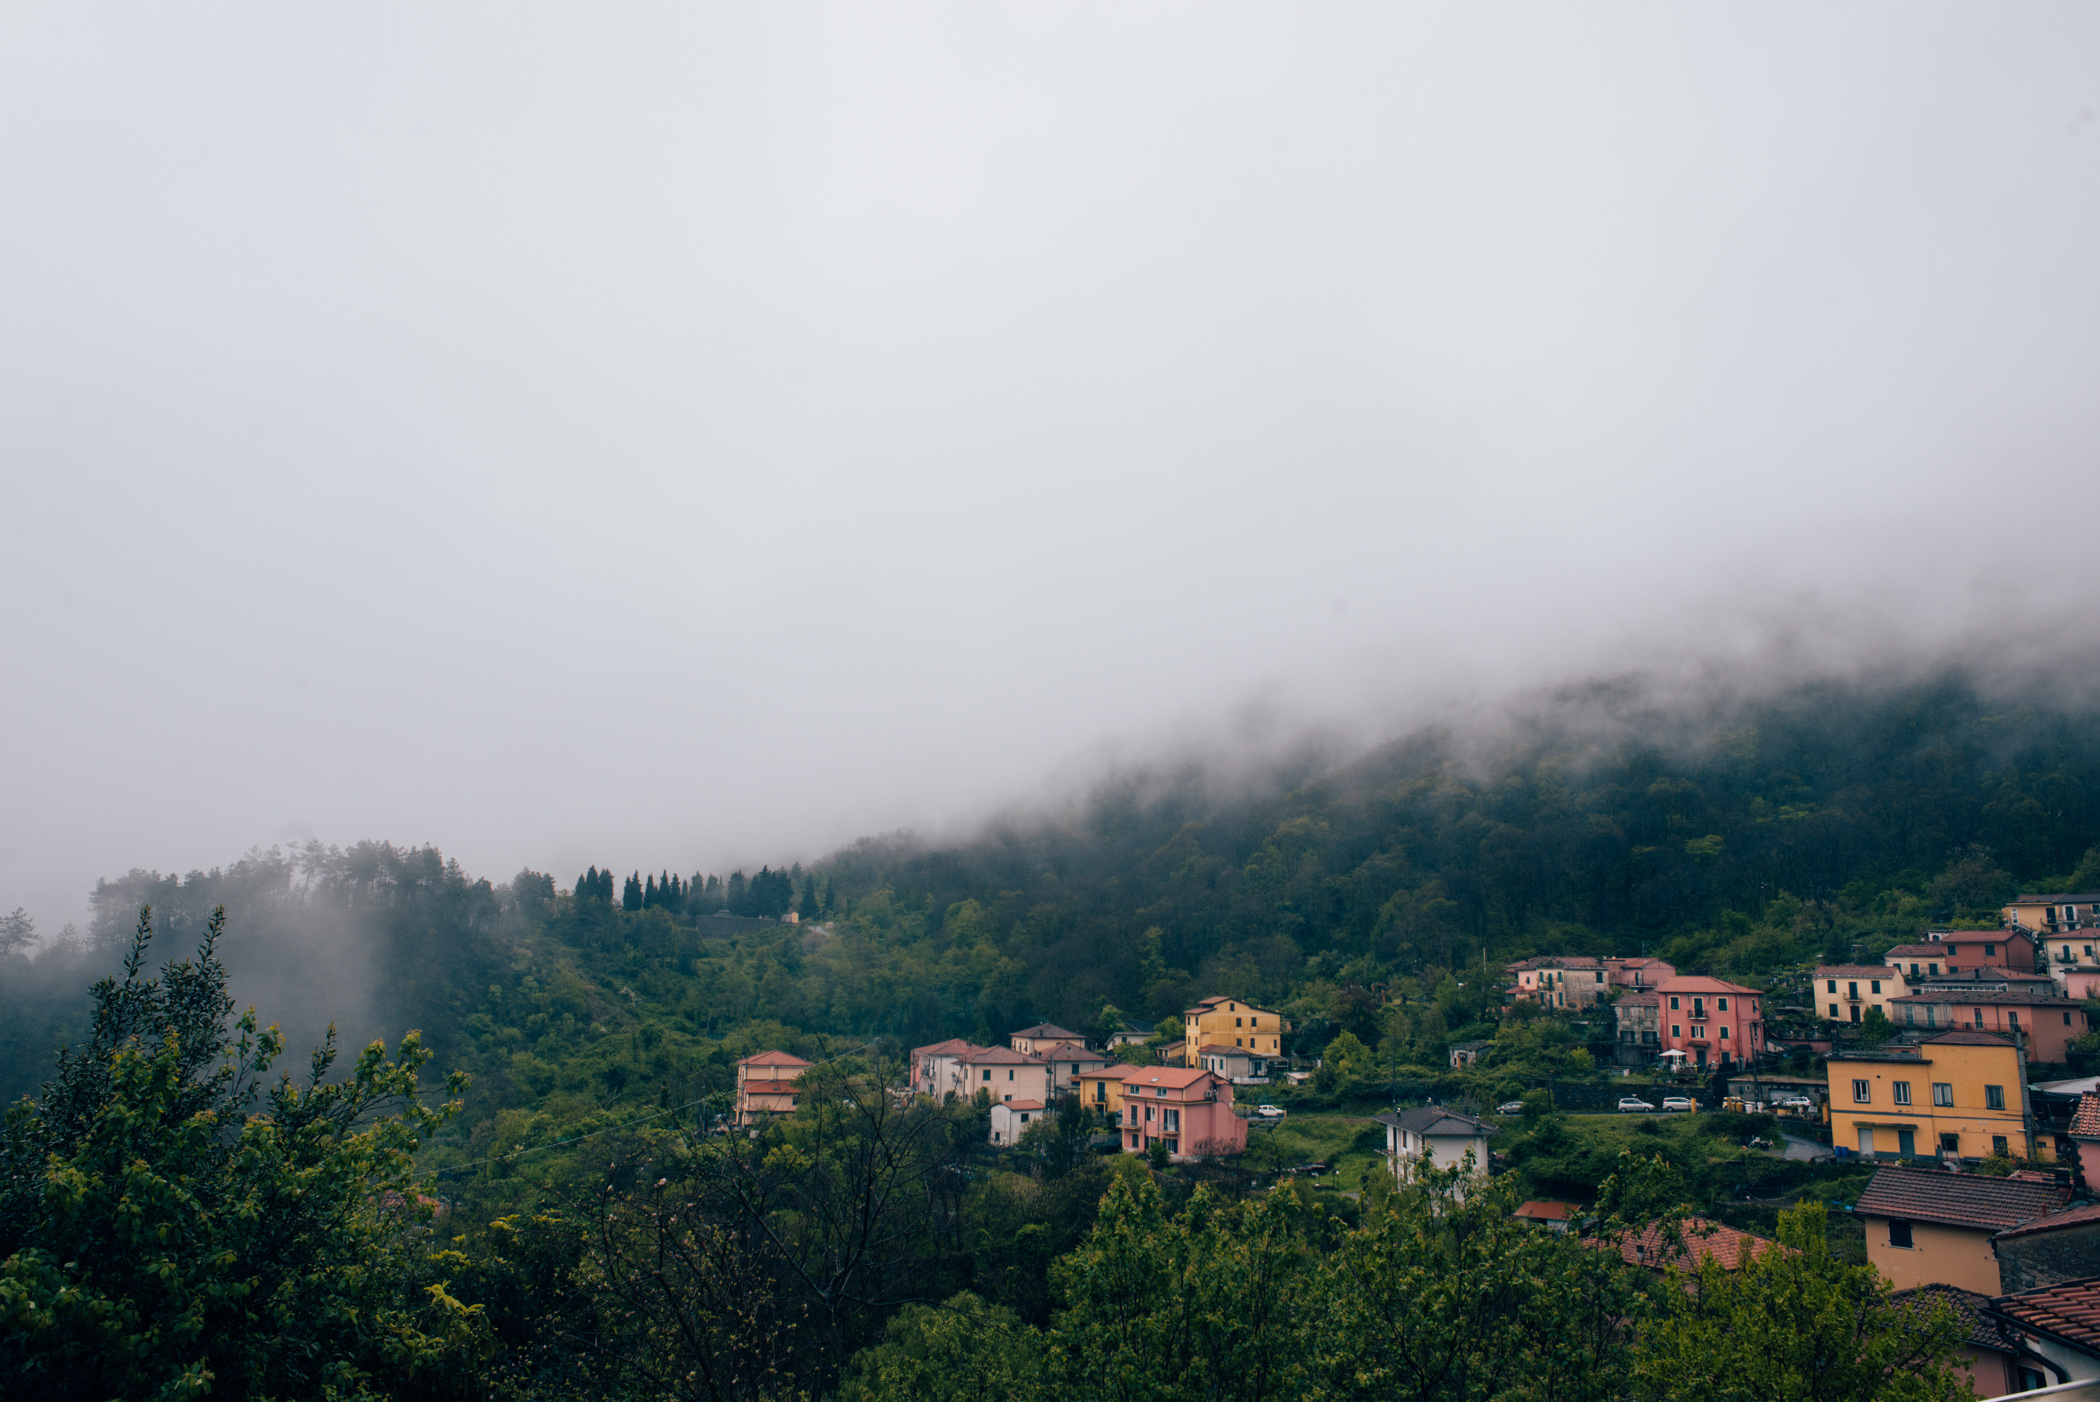 Liguria, Italia – Cinque Terre, including Riomaggiore, Manarola, Corniglia, Vernazz and Monterosso, with Malik and Morgan.